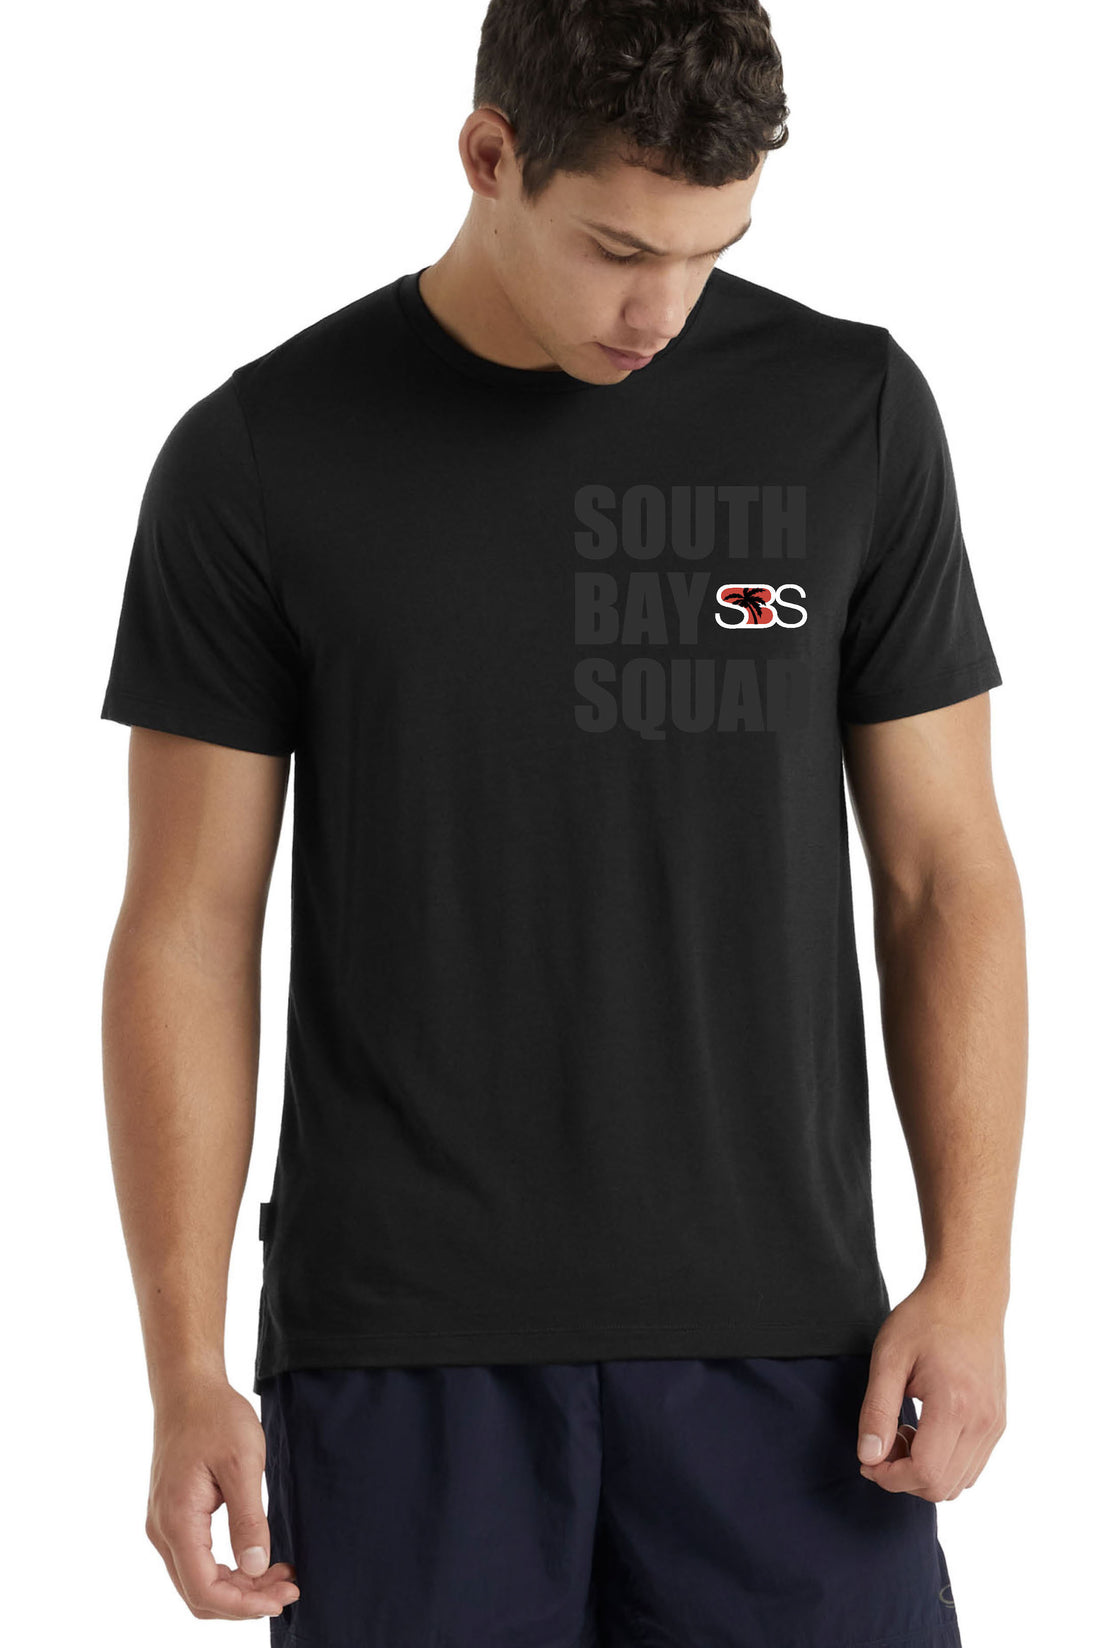 MTO - Camiseta unisex Dry Fit - Gráfico de palabras - Negro - SBS